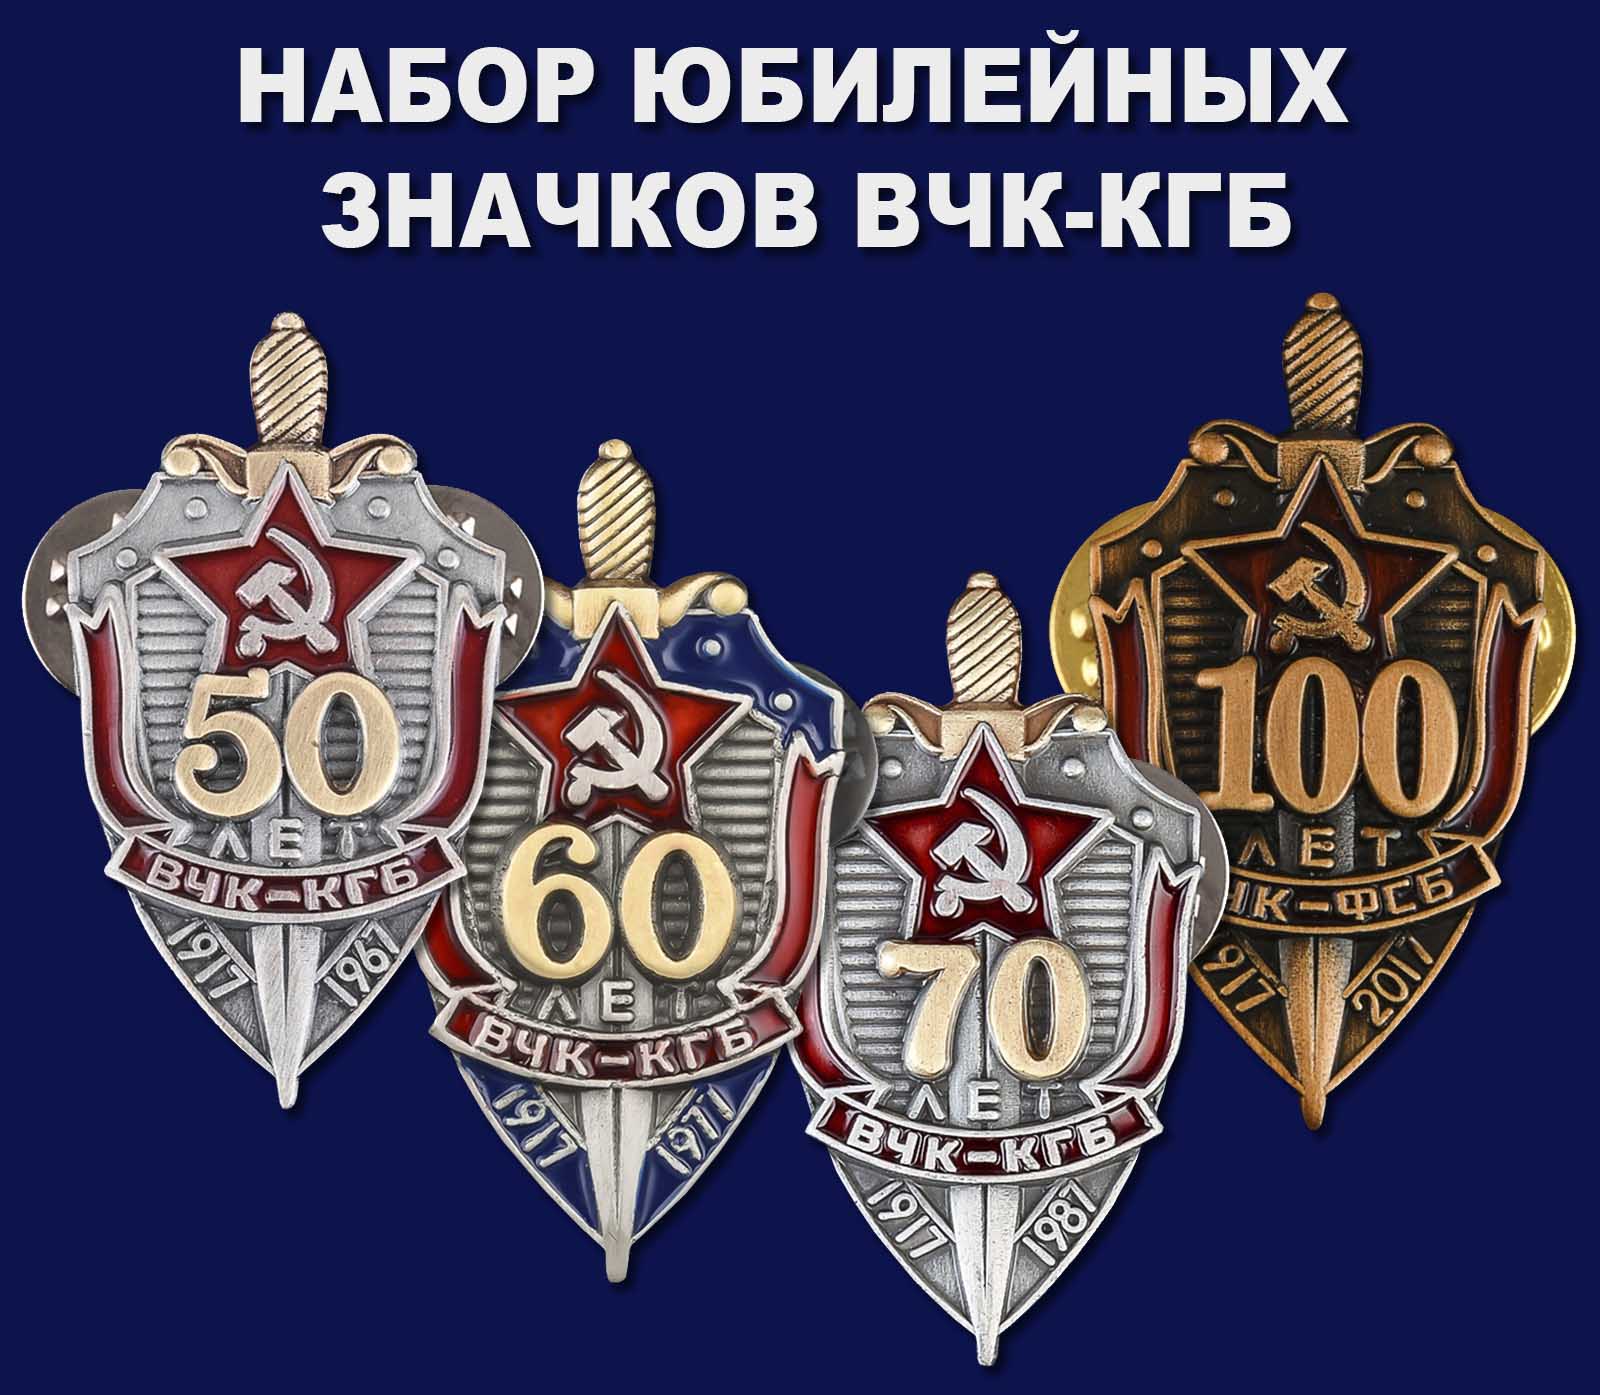 Купить набор юбилейных значков ВЧК-КГБ